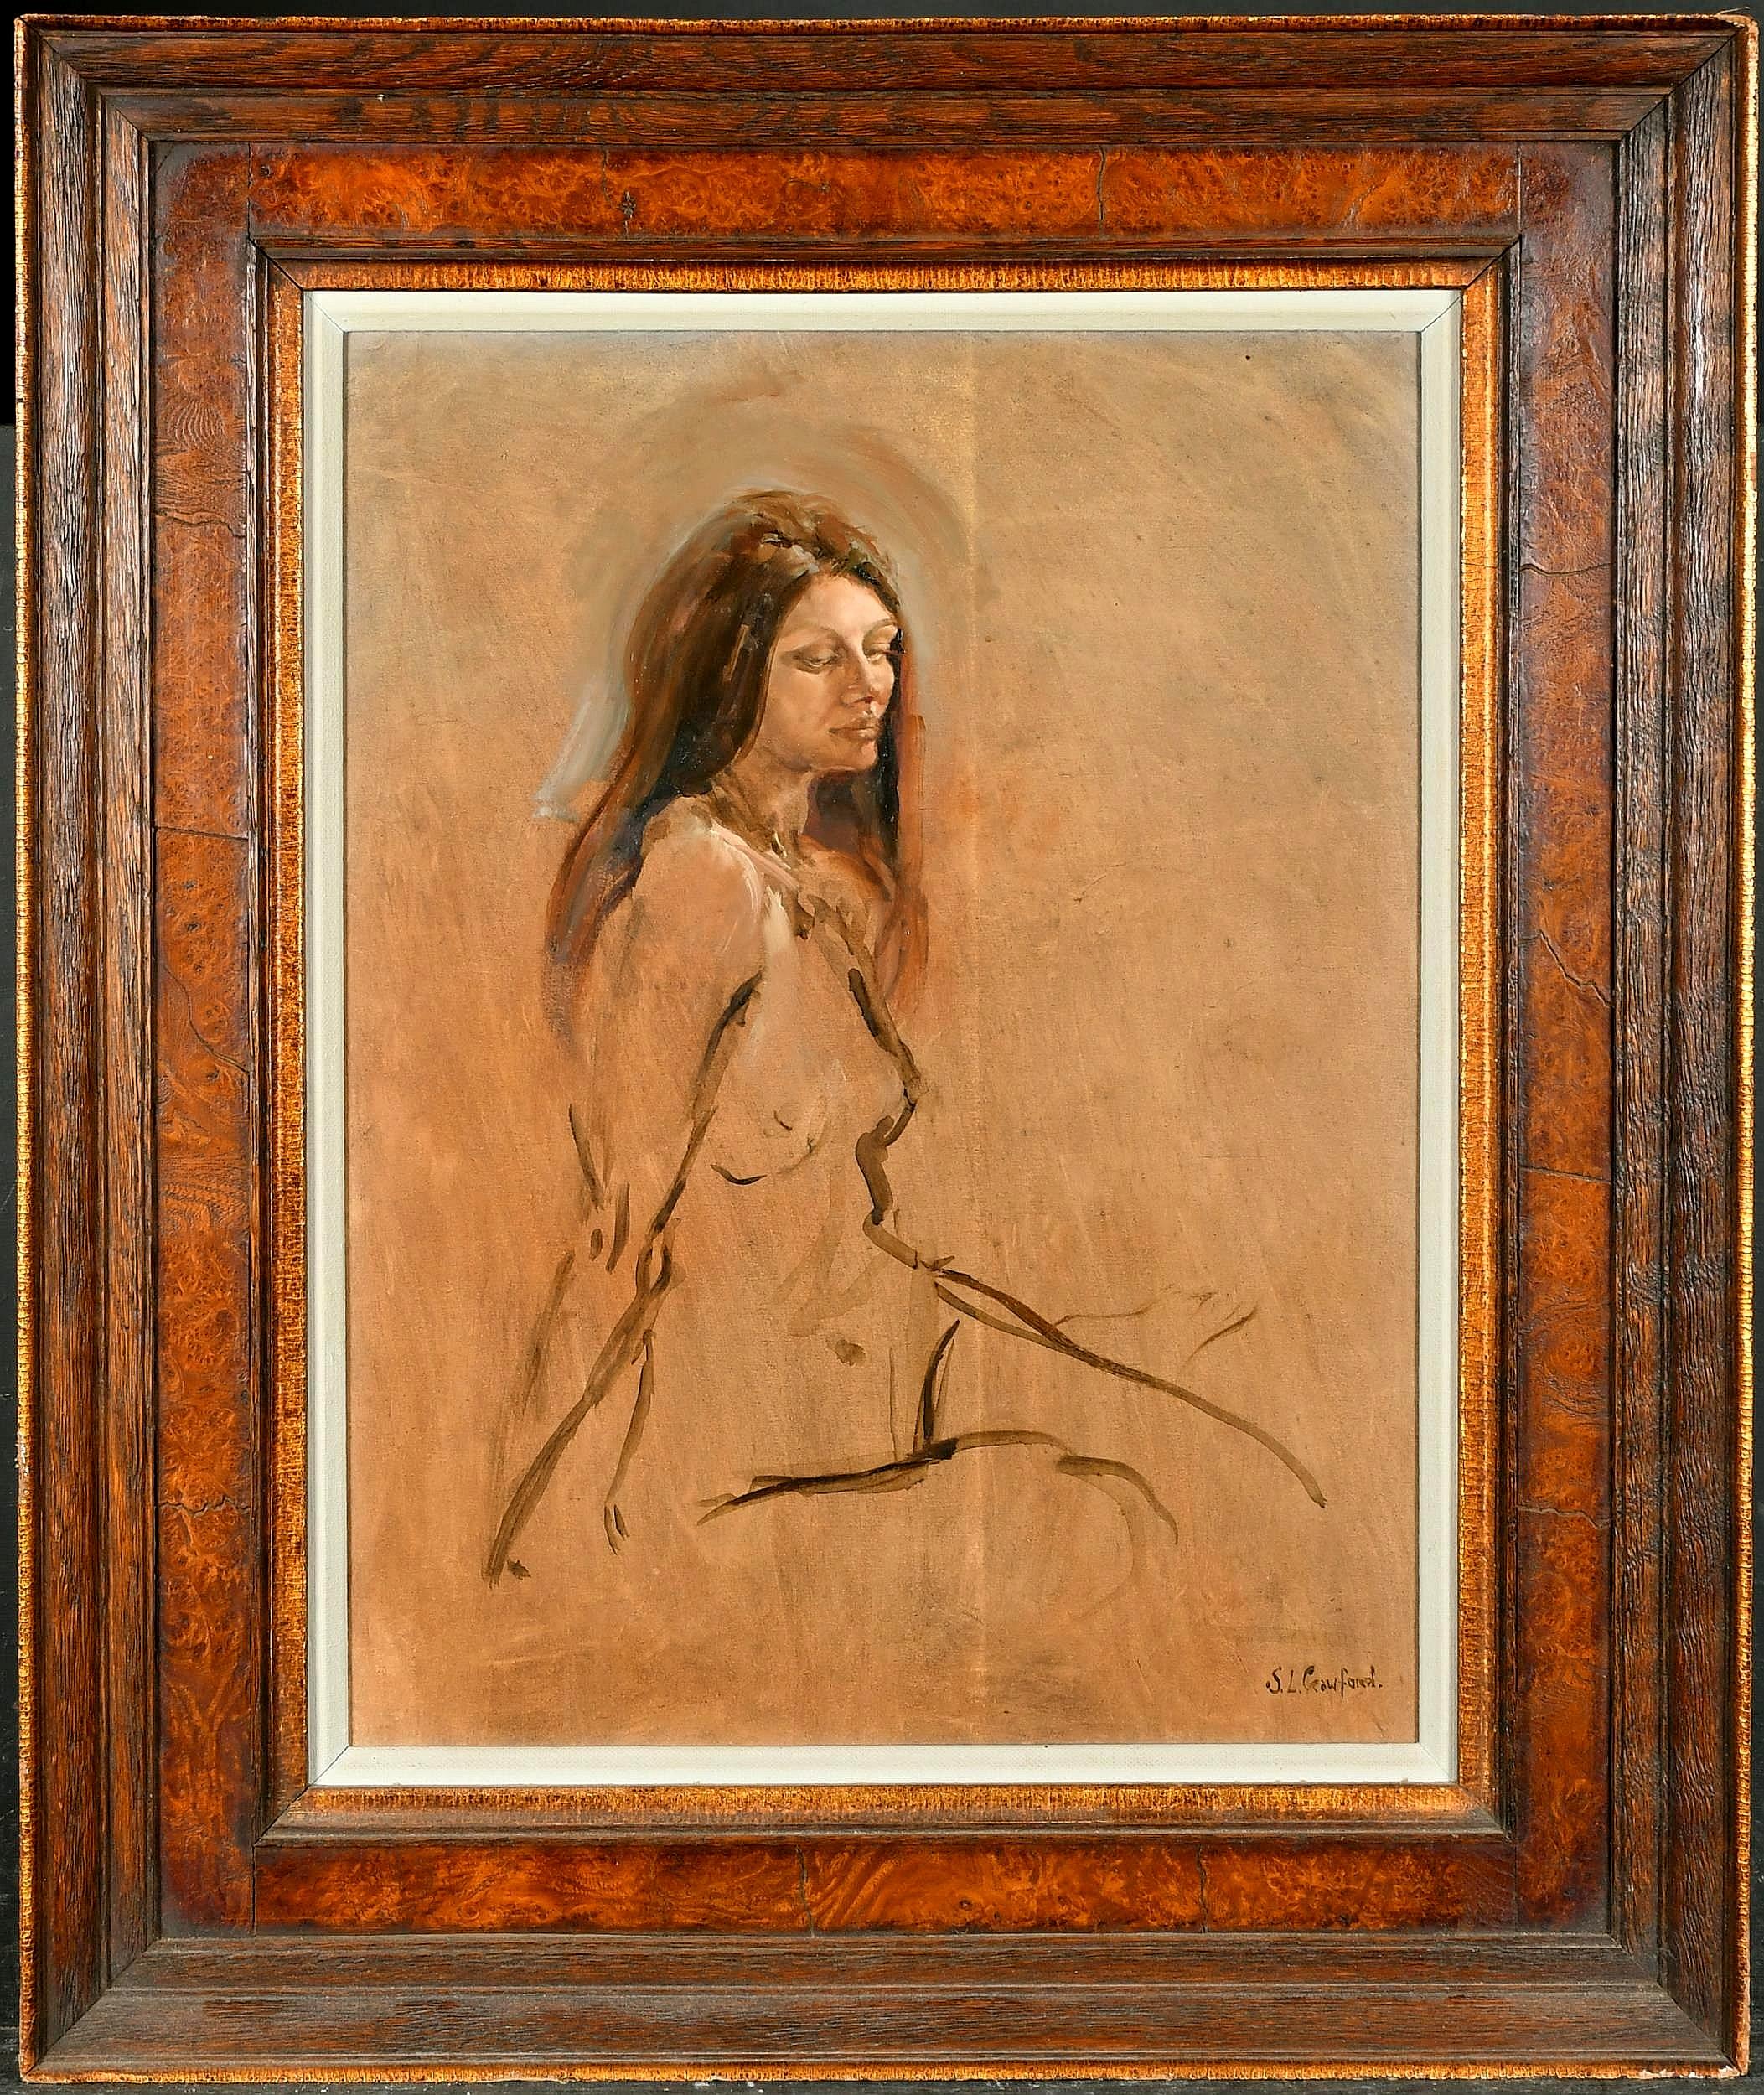 Susan Crawford Portrait Painting – Akt sitzender Akt – feines Aktporträt einer Dame, modernes englisches Ölgemälde